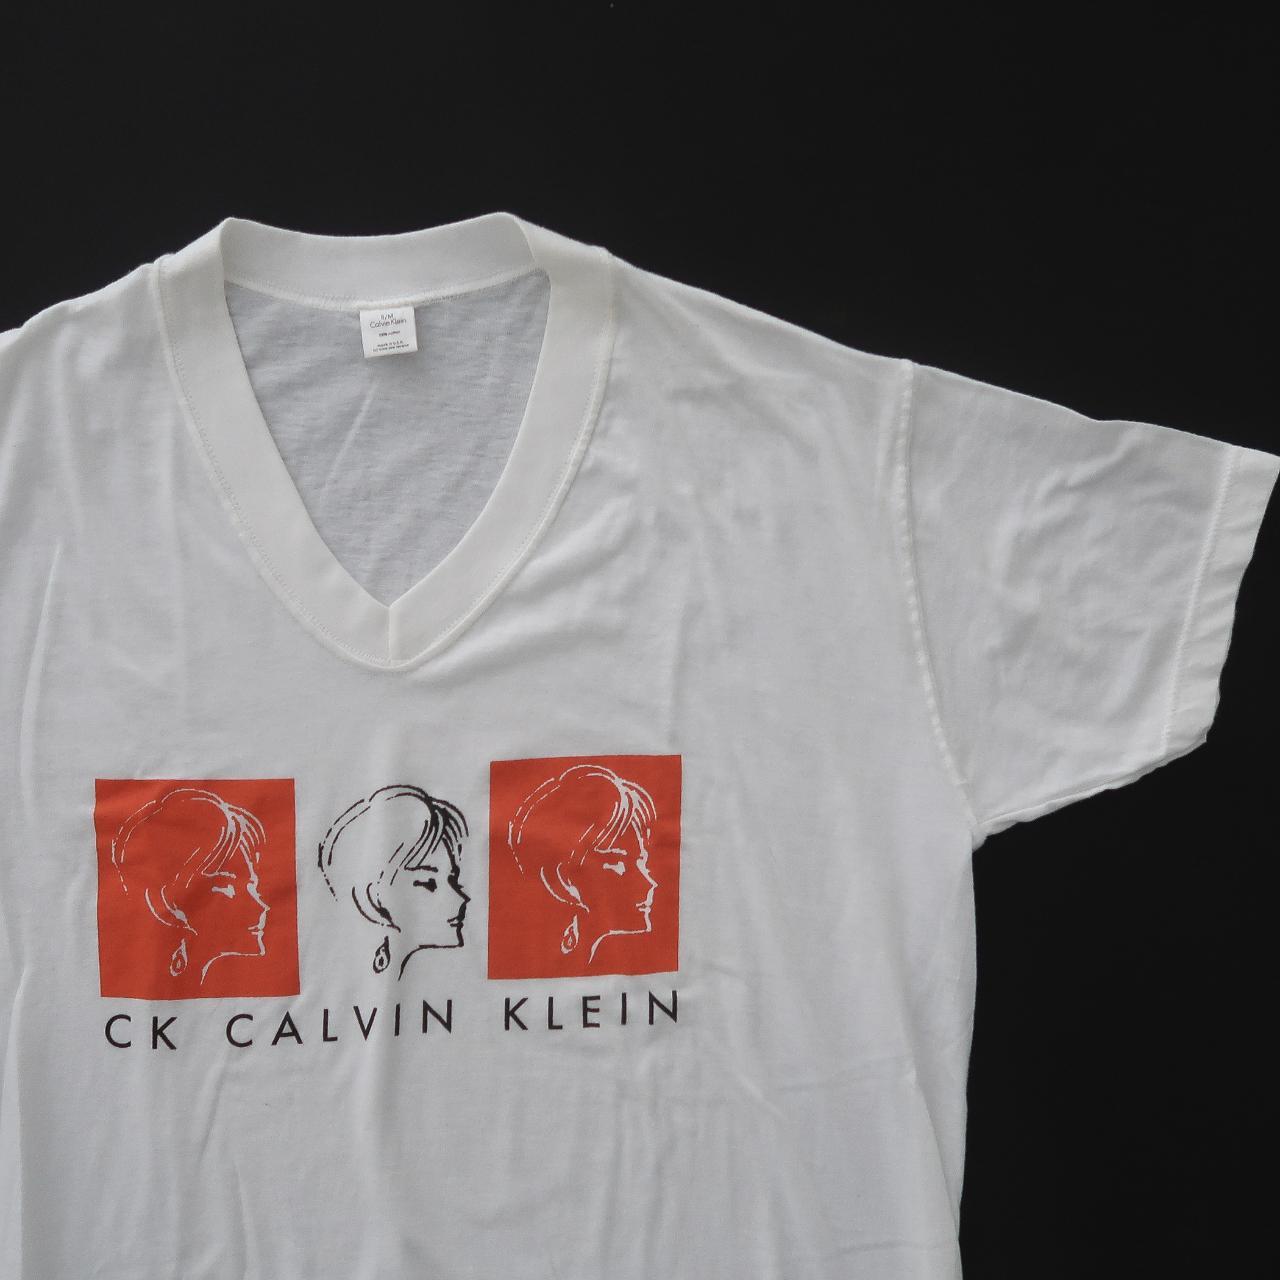 Depop Rad... sleep Klein Vintage 90s - retro Calvin shirt.